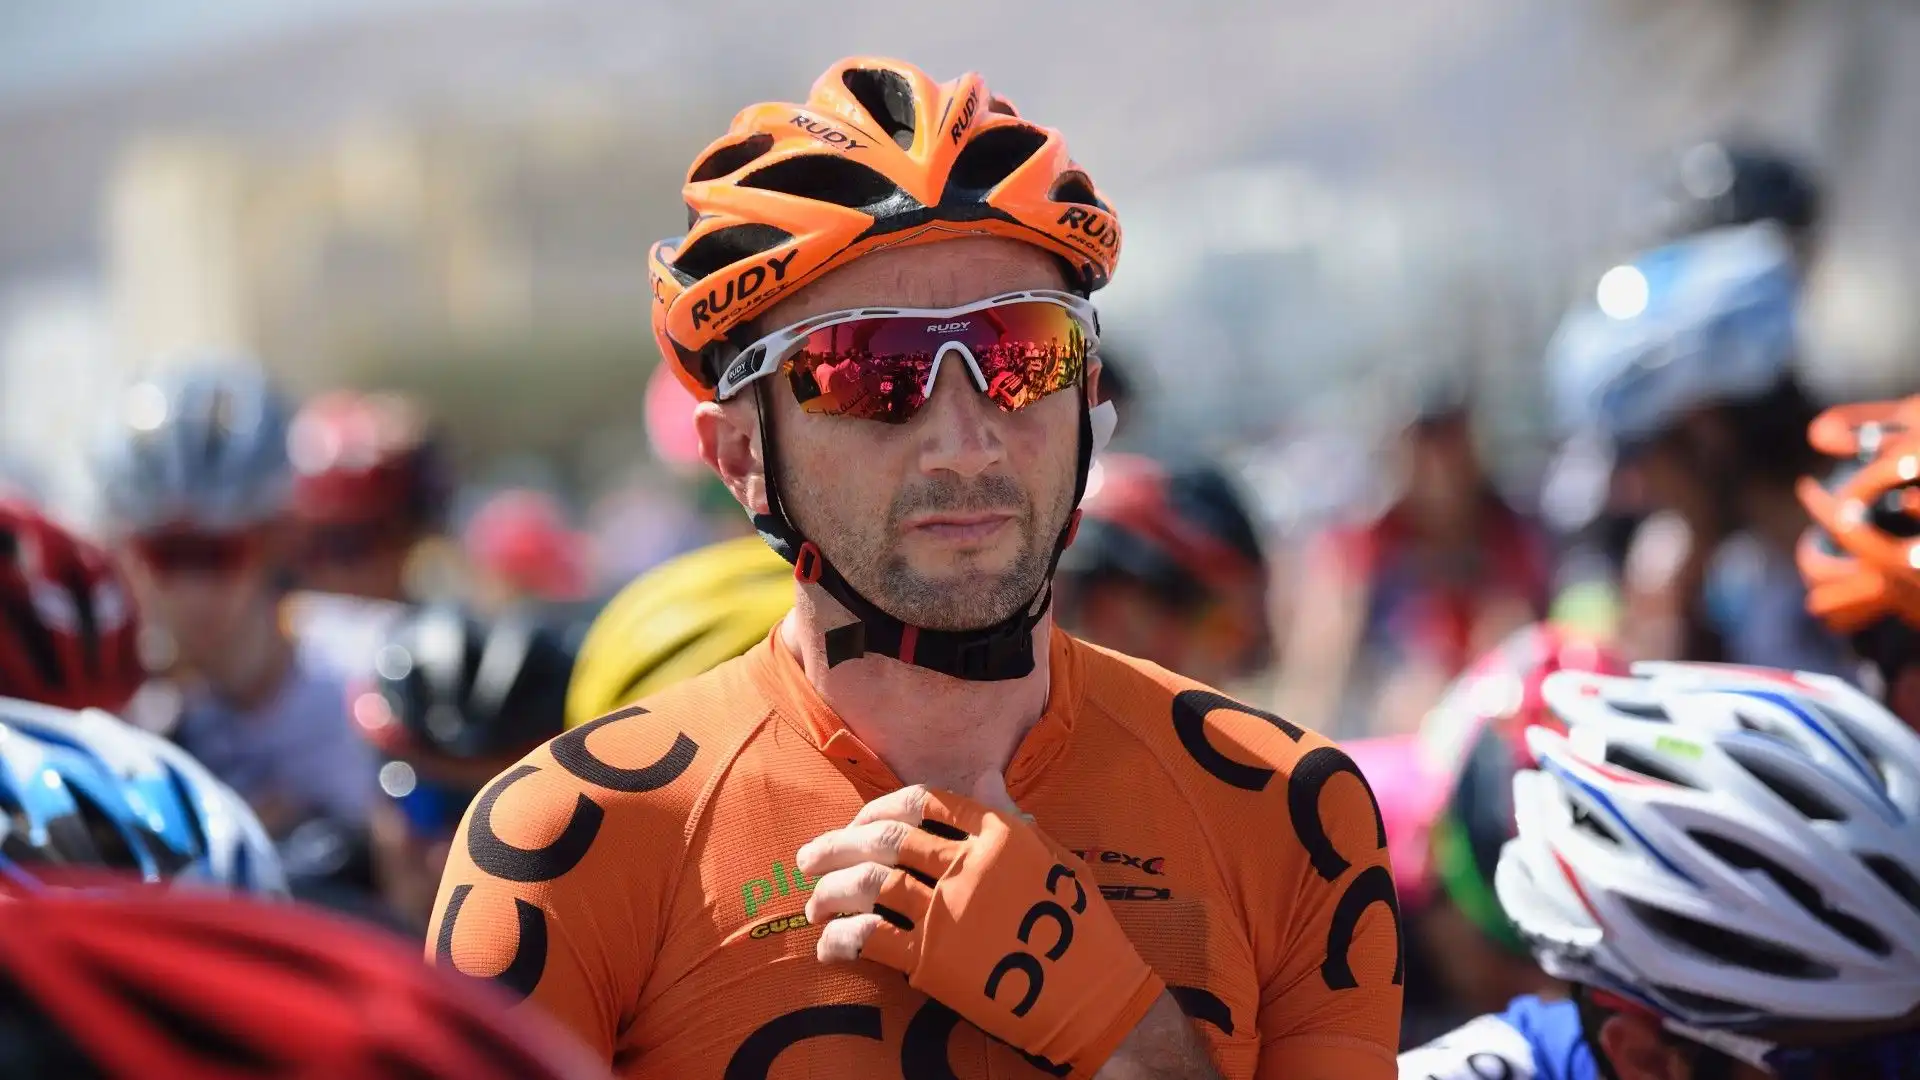 E' morto Davide Rebellin: le foto dell'ex campione di ciclismo